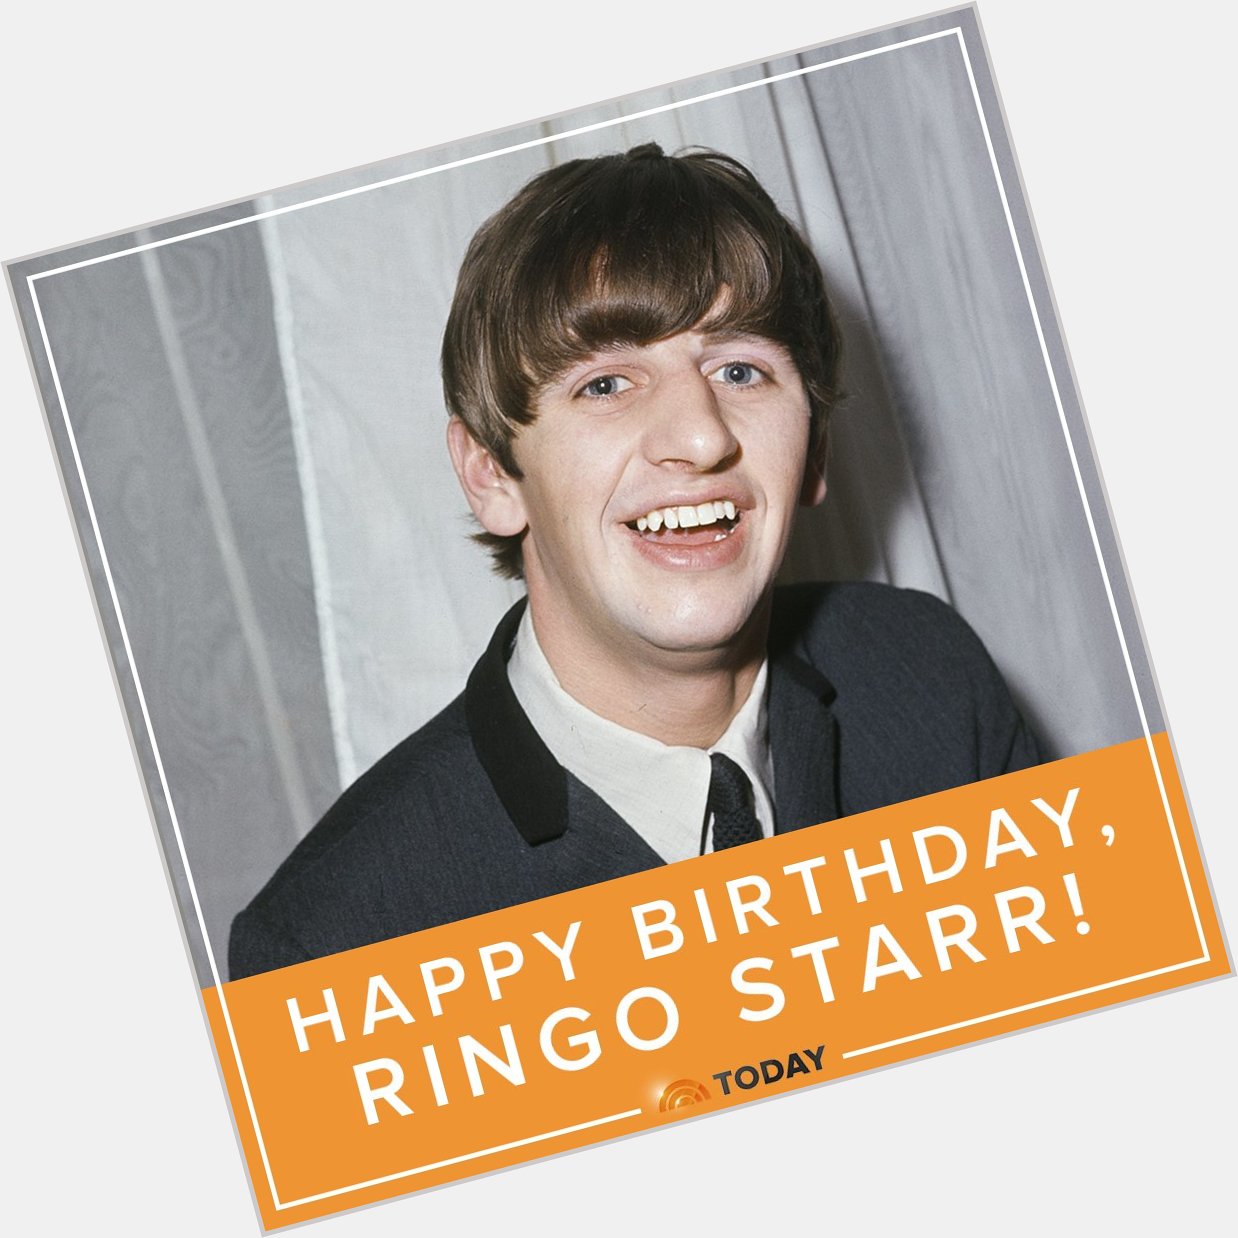 Happy birthday, Ringo Starr! 